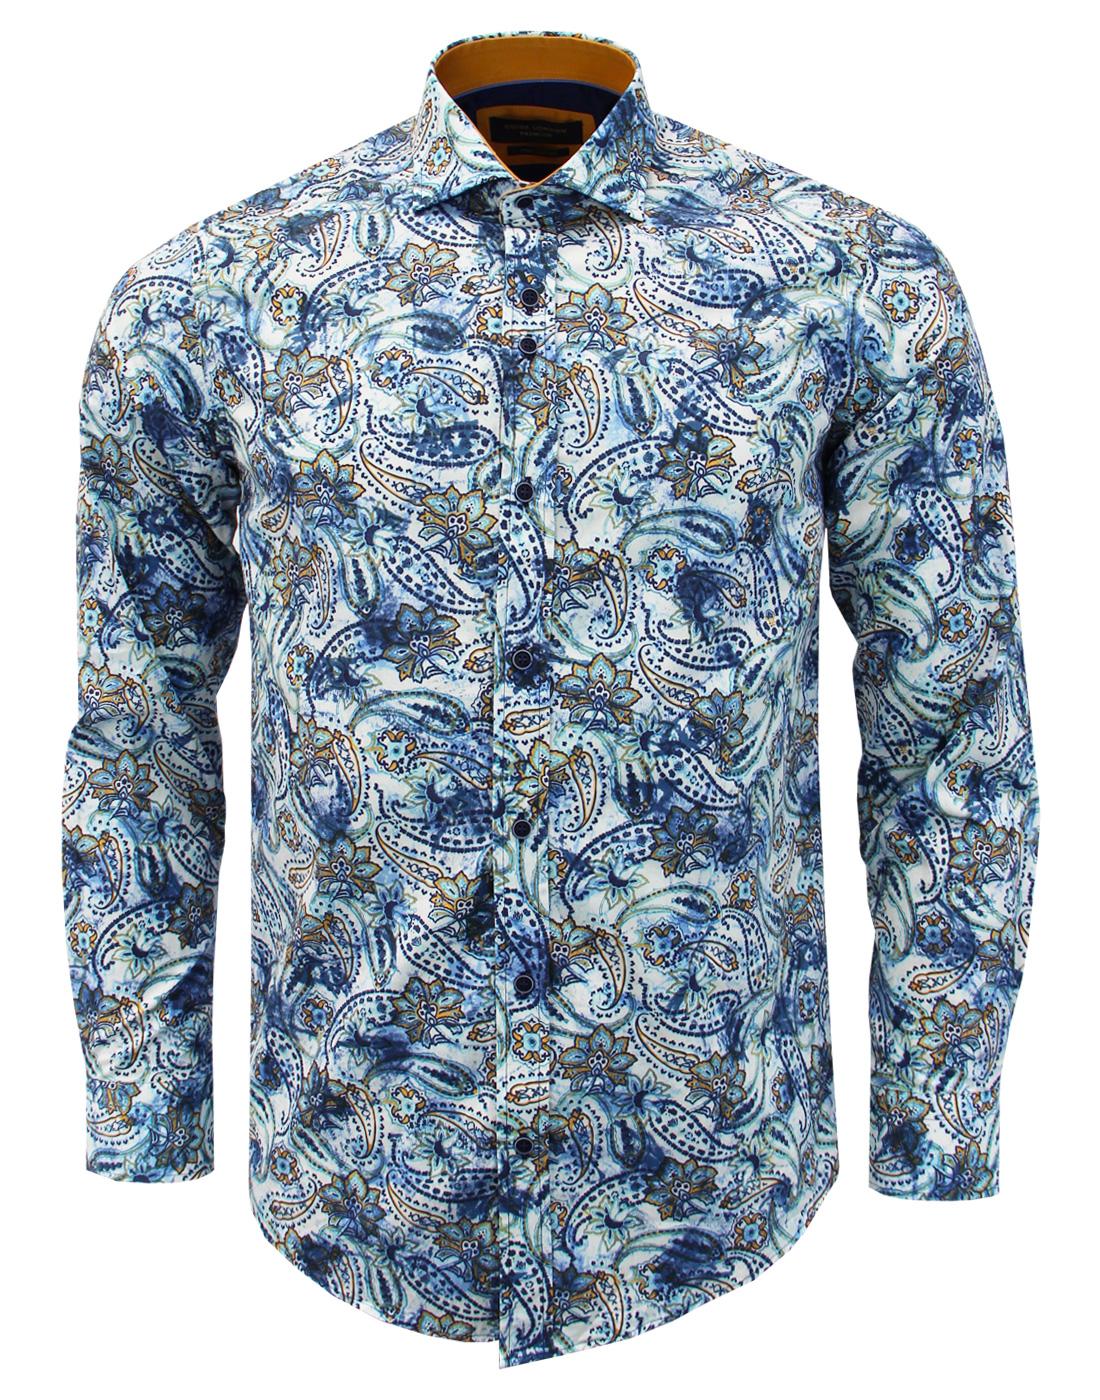 GUIDE LONDON Men's Retro 60s Mod Smudgy Paisley Floral Shirt